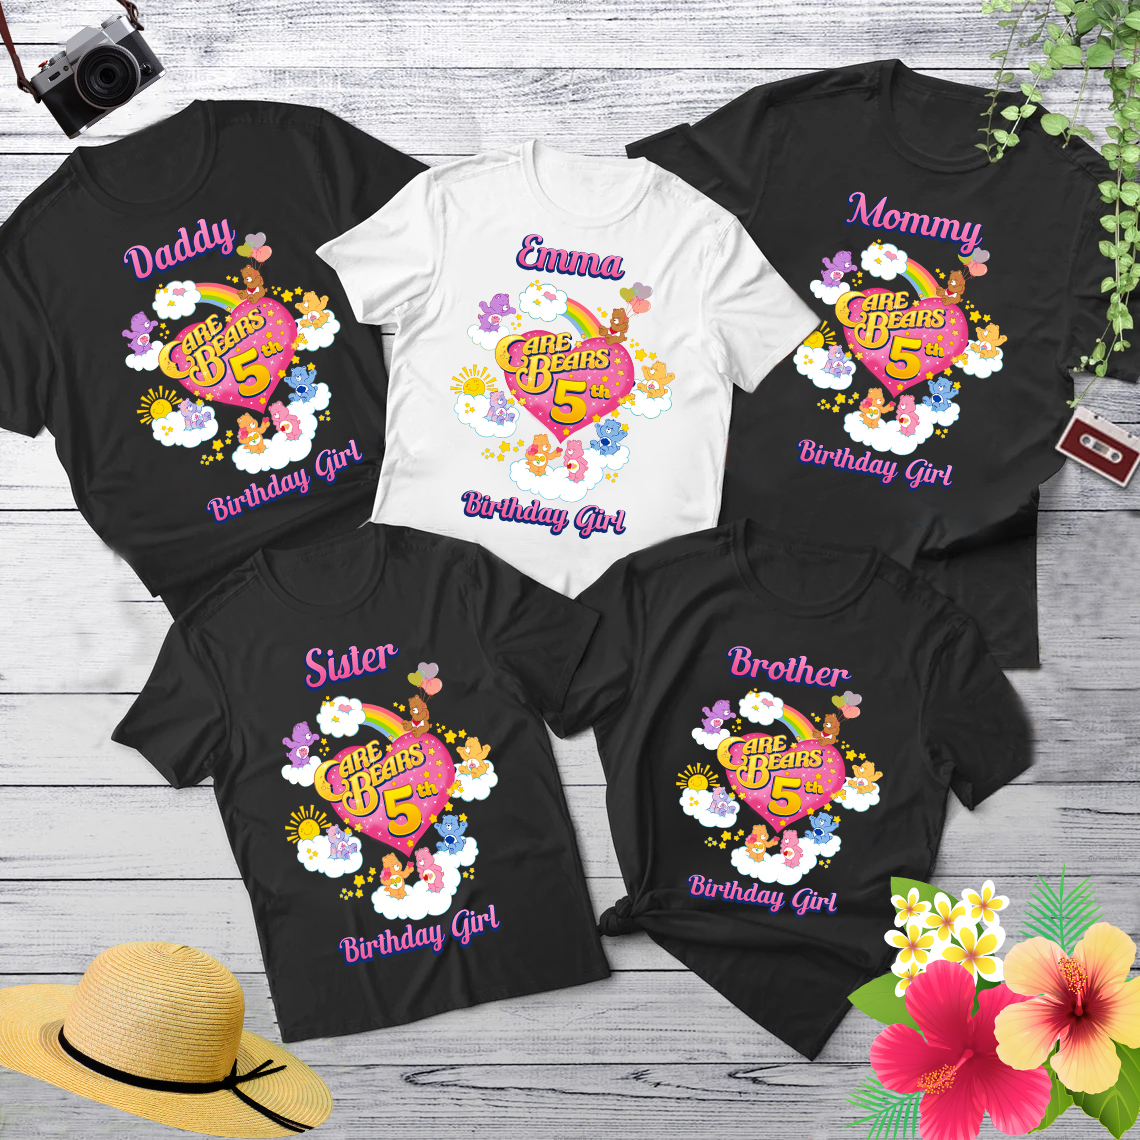 Care Bears Birthday Shirt, Custom Matching Family Birthday Shirt, Personalized Birthday Gifts